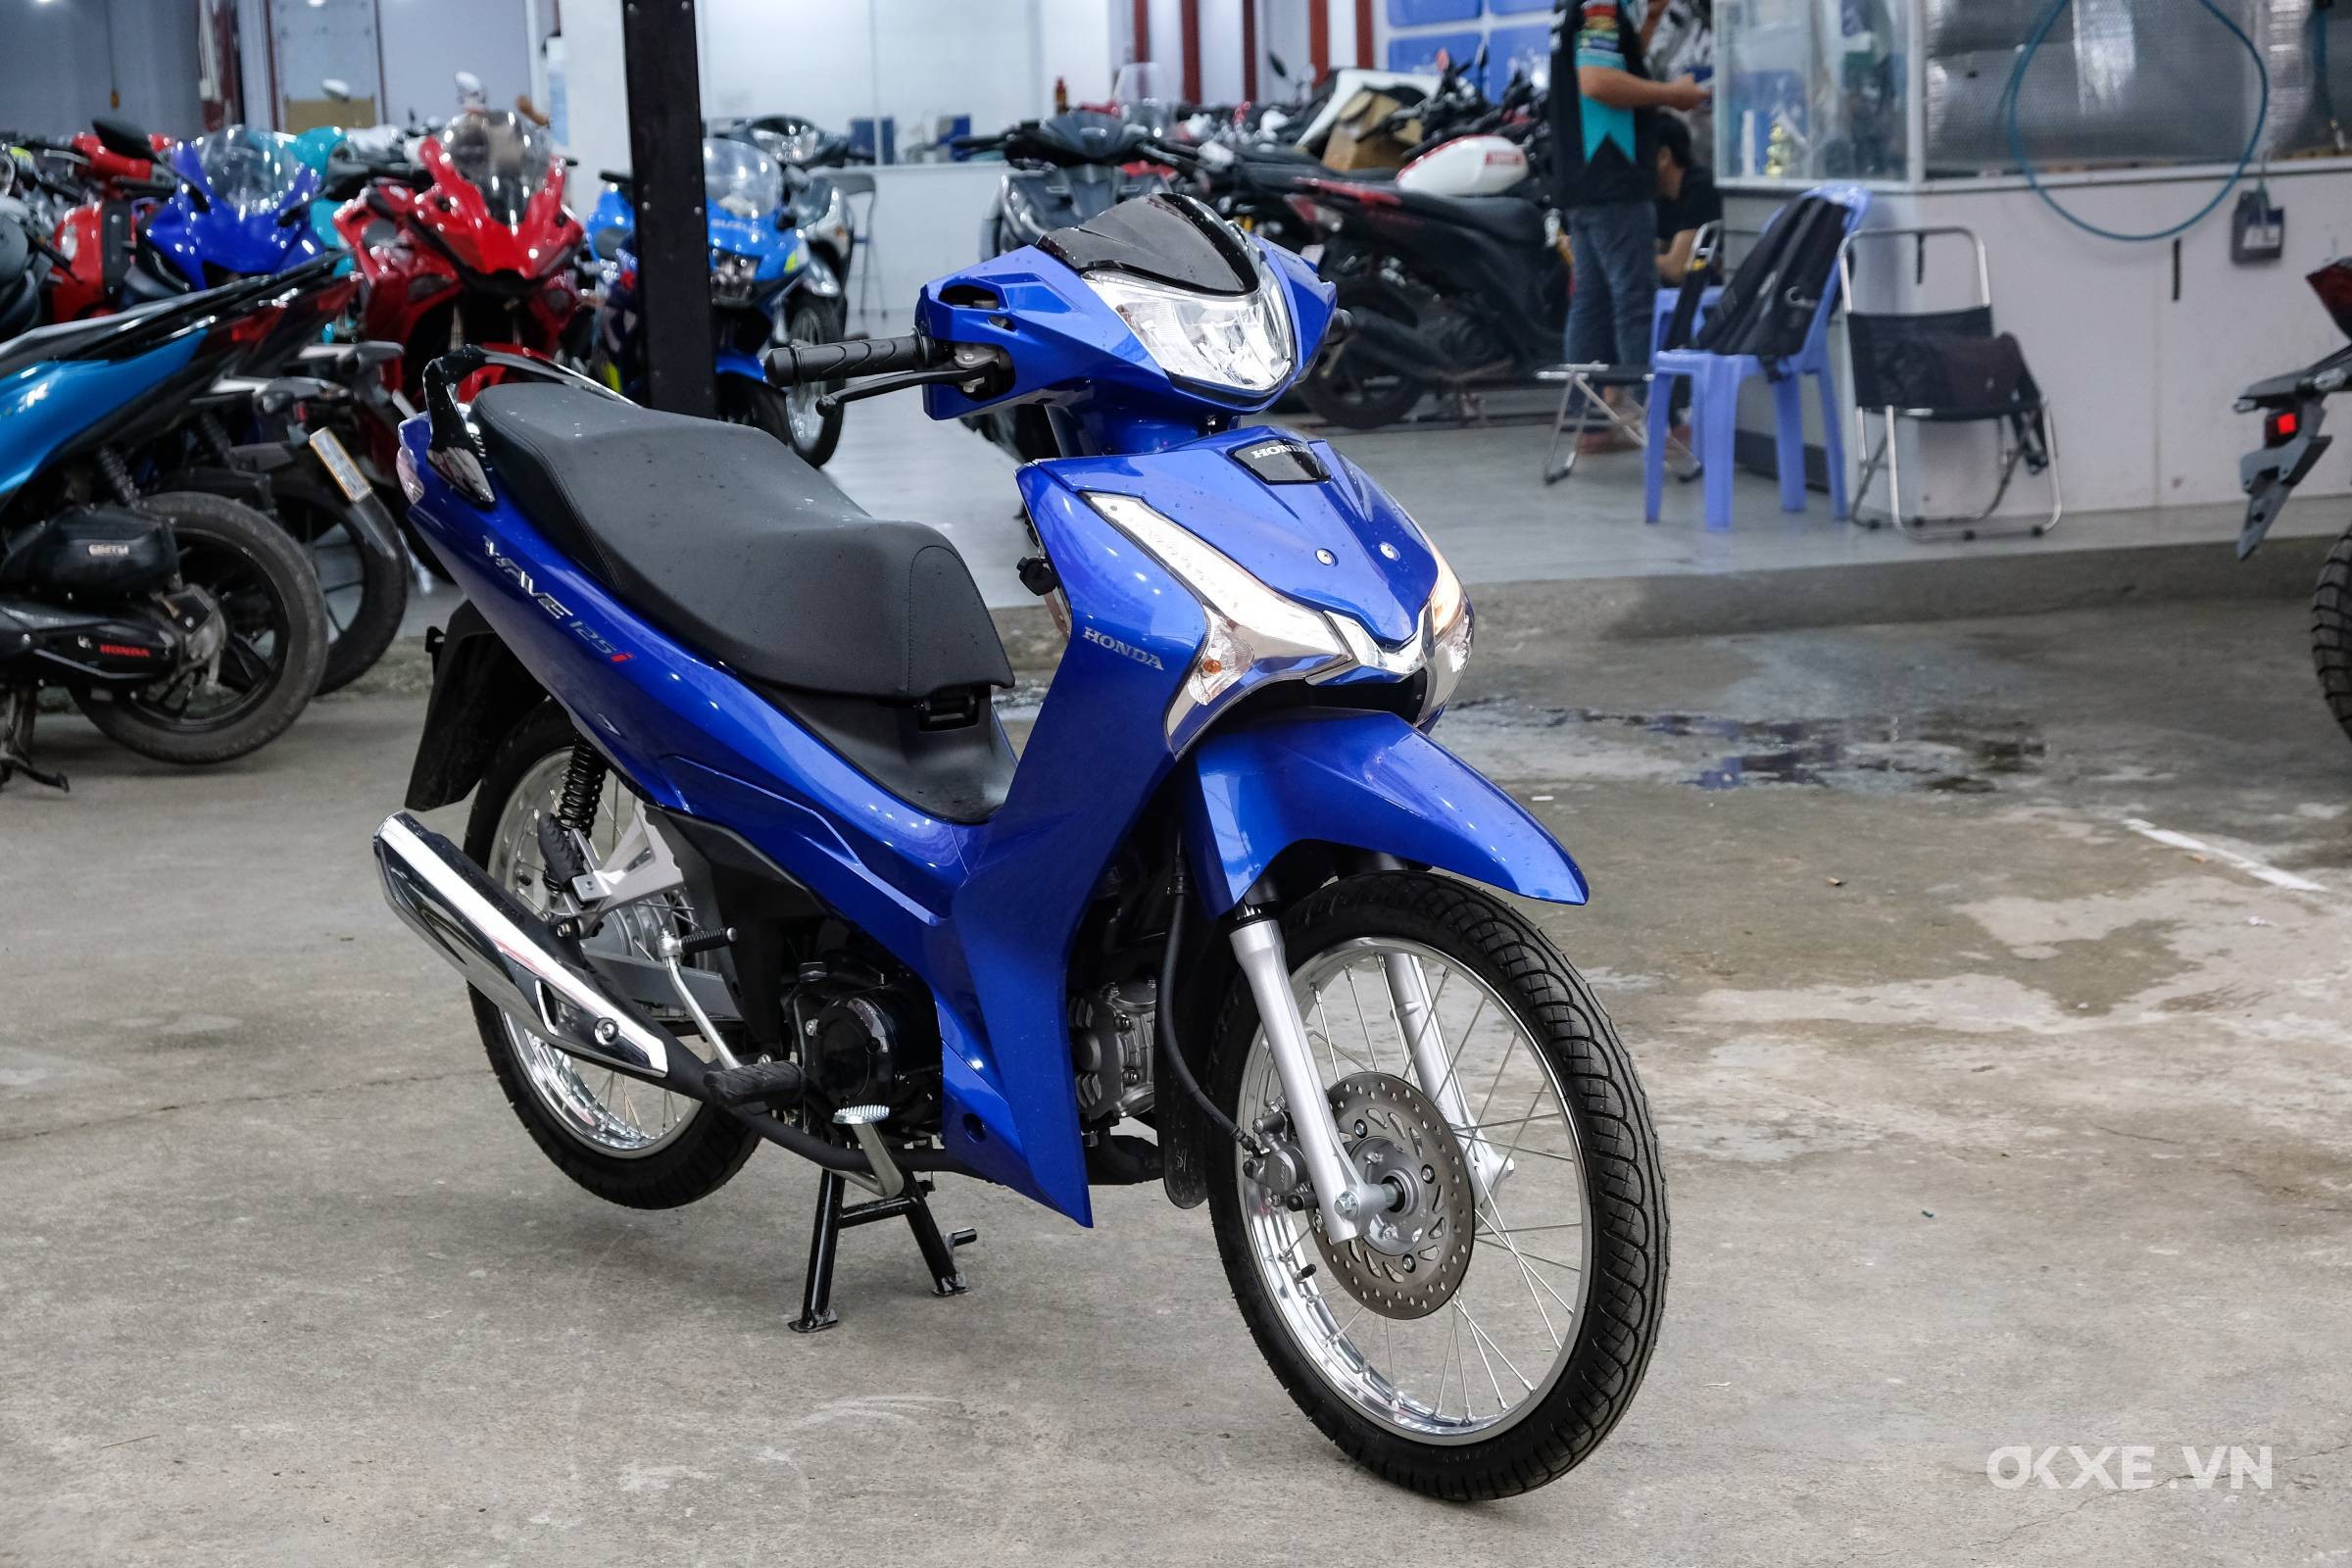 Bảng giá xe máy Honda Wave Thái 125i mới nhất ngày 218 Thổi giá tới hơn  50 triệu